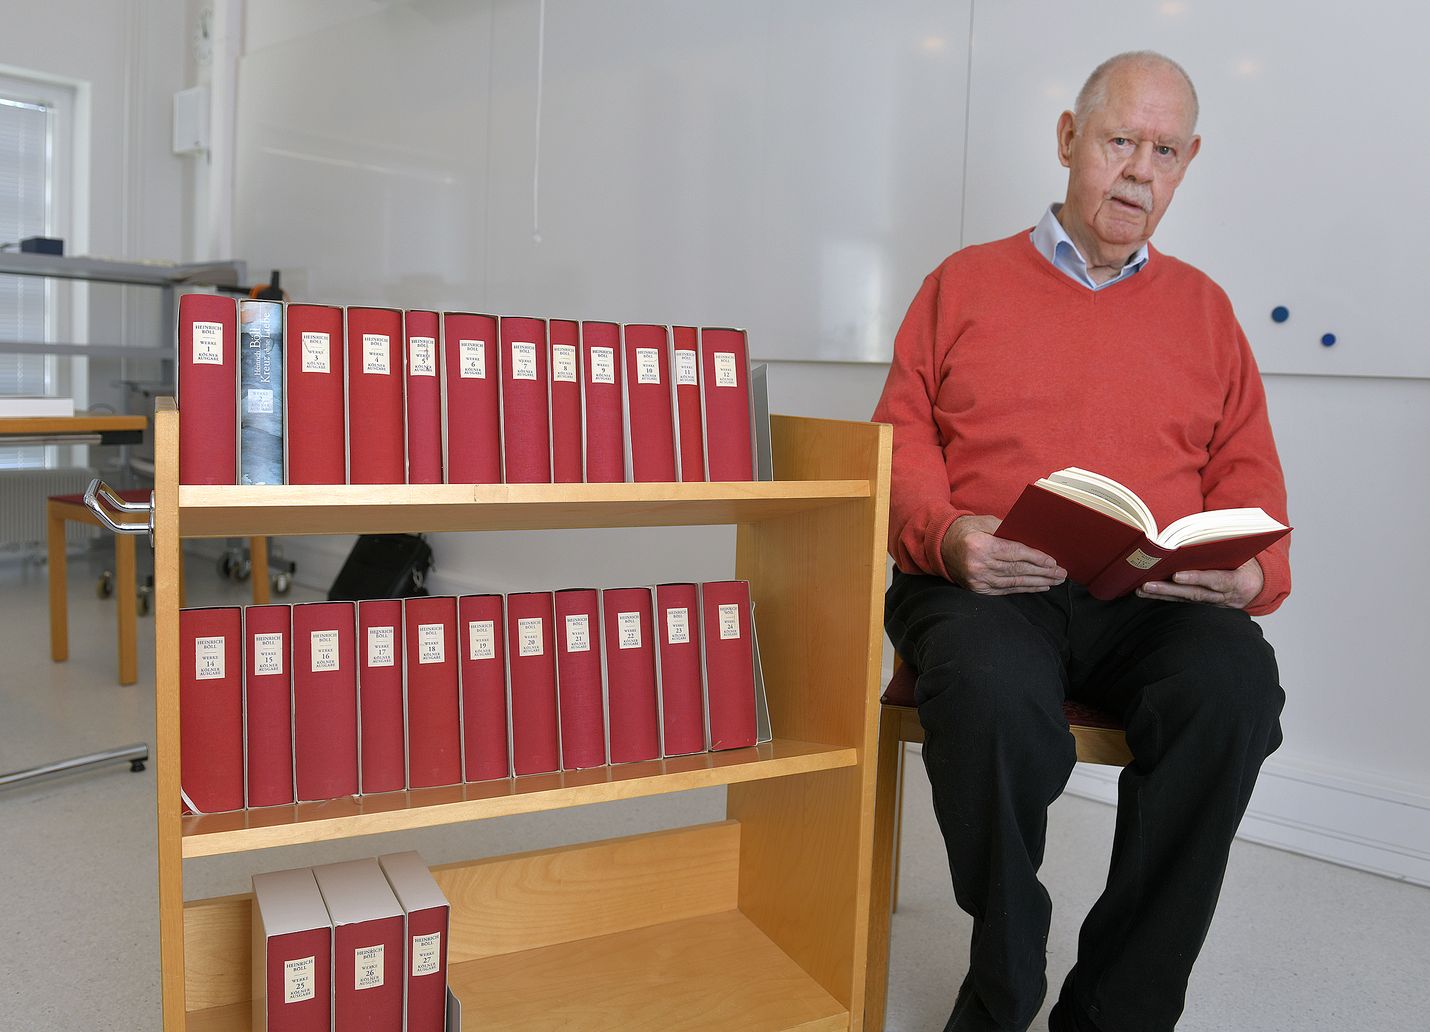 Herbert Albrecht toi Rauman kirjastoon saksankielisistä kirjallisuutta. Albrecht asuu osan vuodesta Raumalla.  Tällä viikolla on aika jättää Rauma taakse ja suunnata takaisin kotikaupunkiin Waldshut-Tiengeniin.